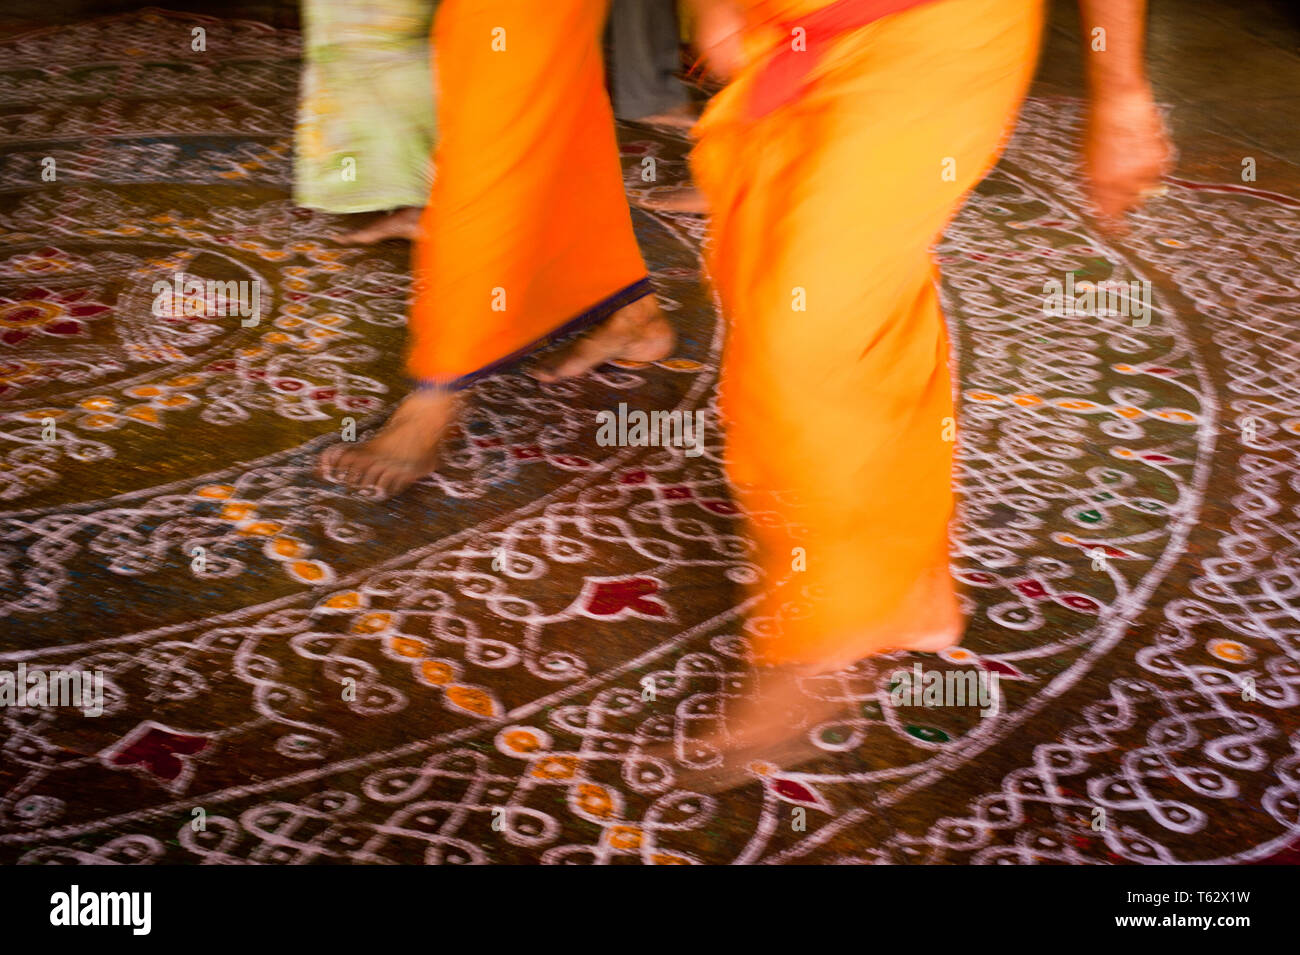 Abstraktes Bild der Bewegung verwischt Barfuß pilgernden Menschen in bunten Kleidern zu Fuß auf dem Boden mit gemalten Mandalas Ornament. Traditionelle decoratio Stockfoto